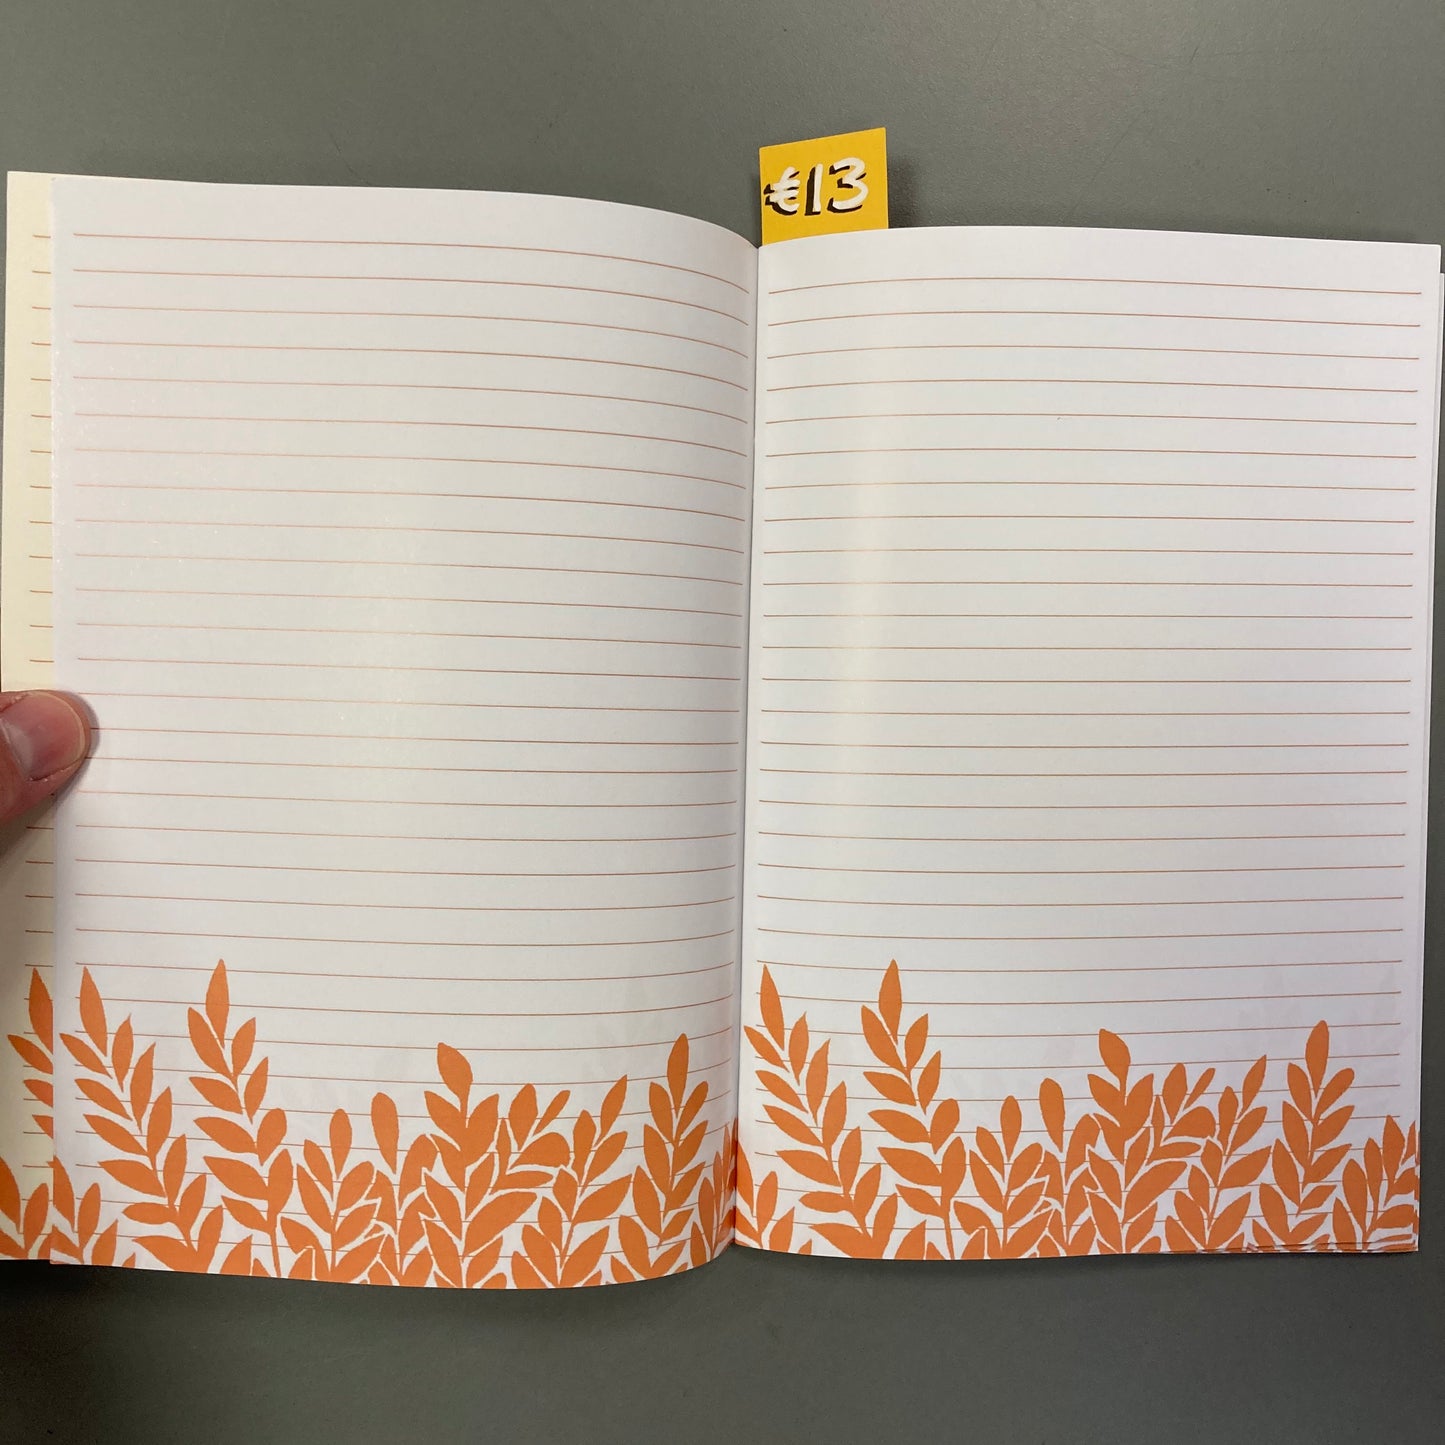 Peach Ideas (A5 Notebook)